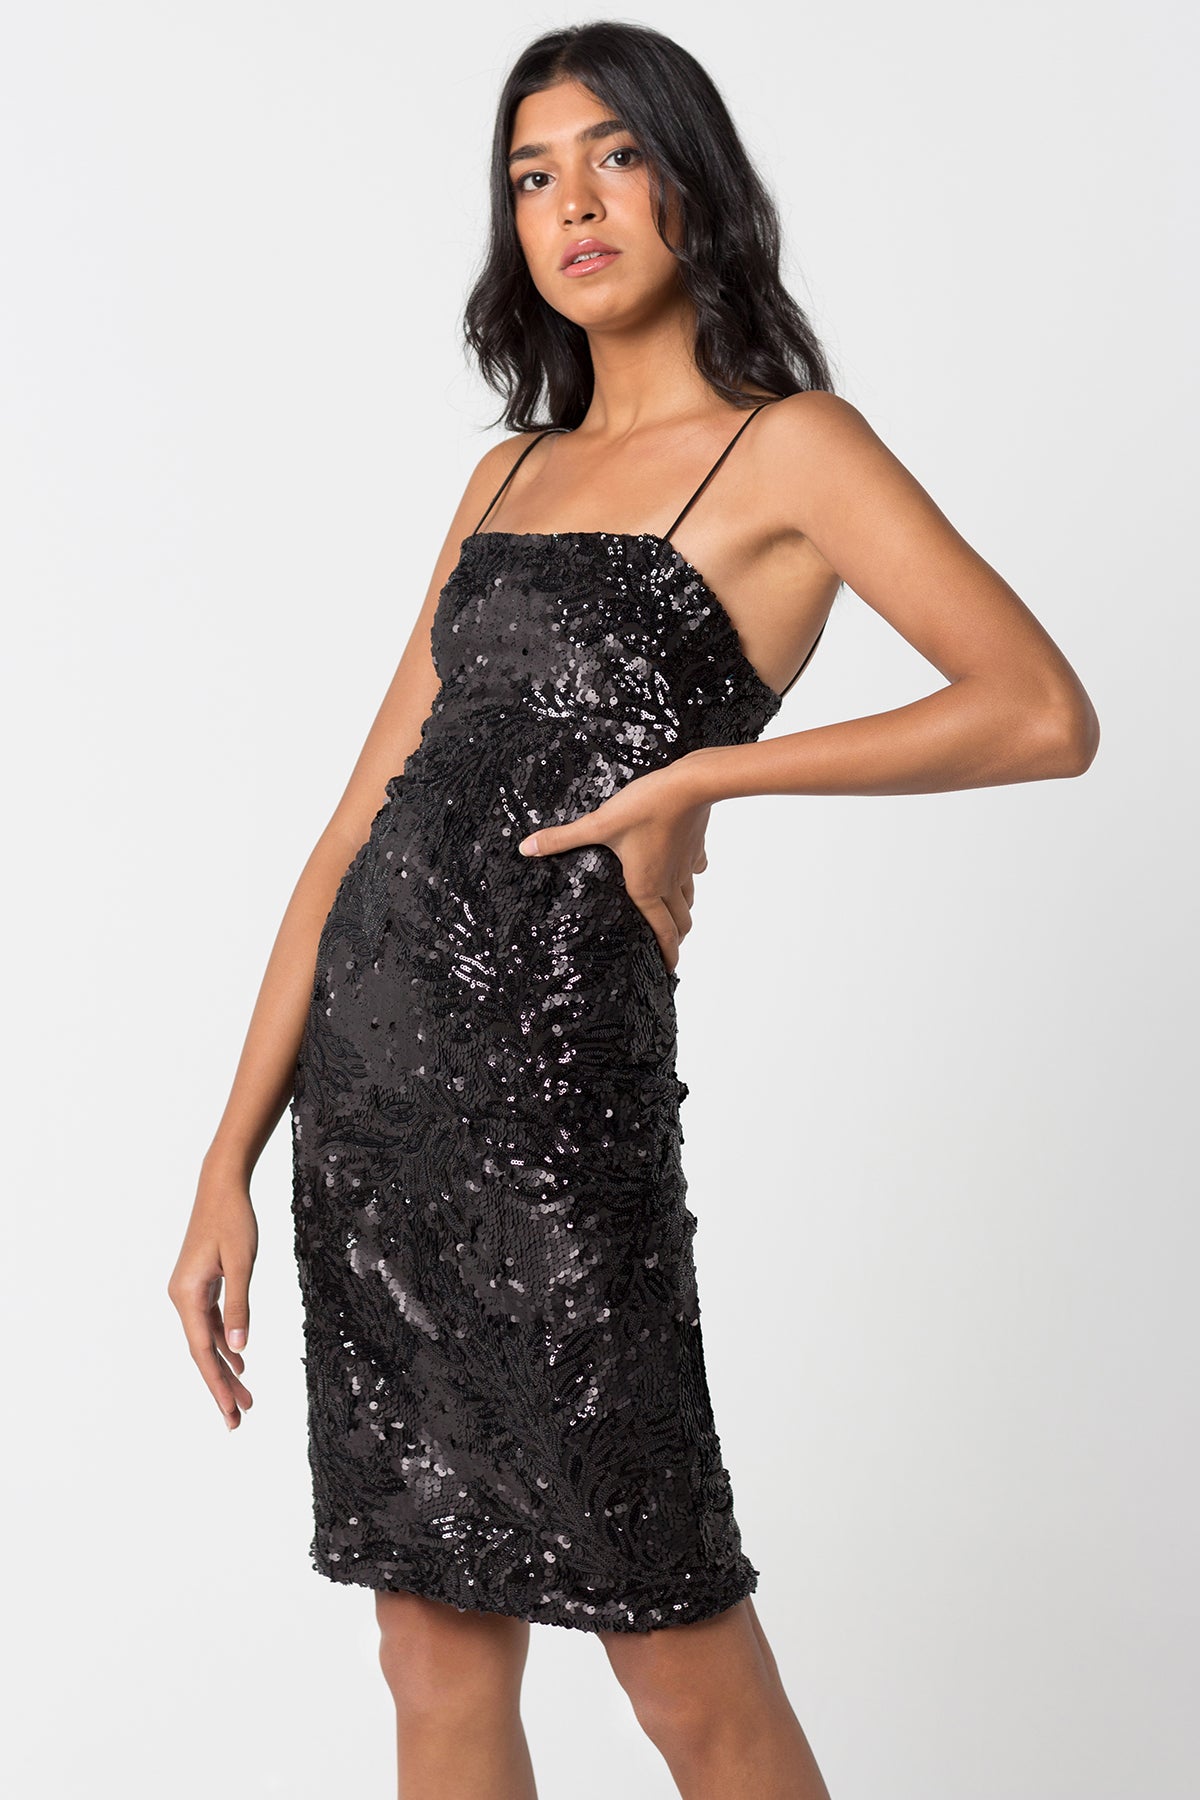 Black Sequined Dress - ShopAuthentique